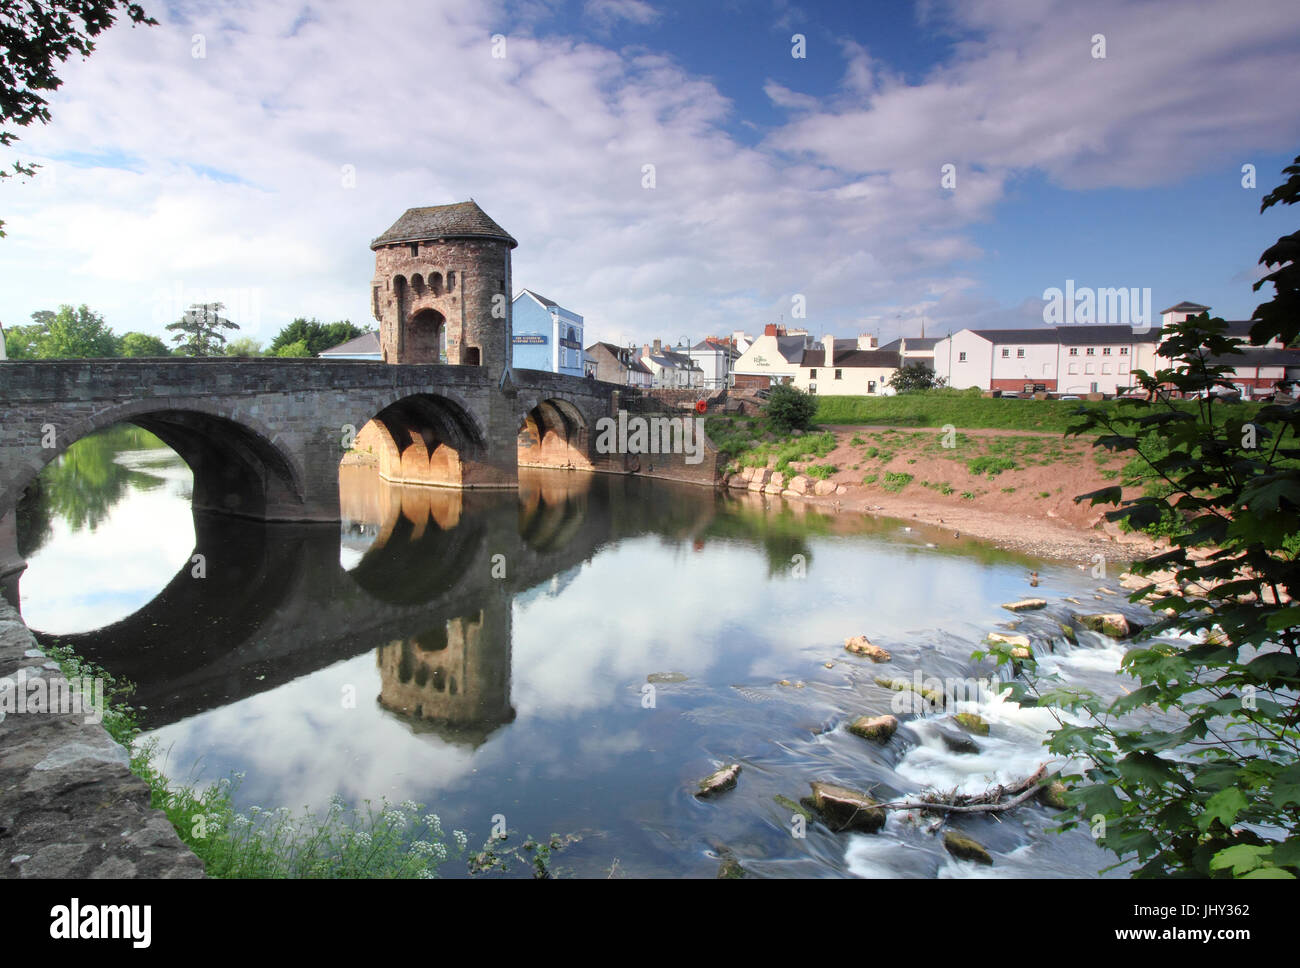 Monnow Bridge e Gate, unico resto fortificato ponte sul fiume in Gran Bretagna, in Monmouth, Wales, Regno Unito Foto Stock